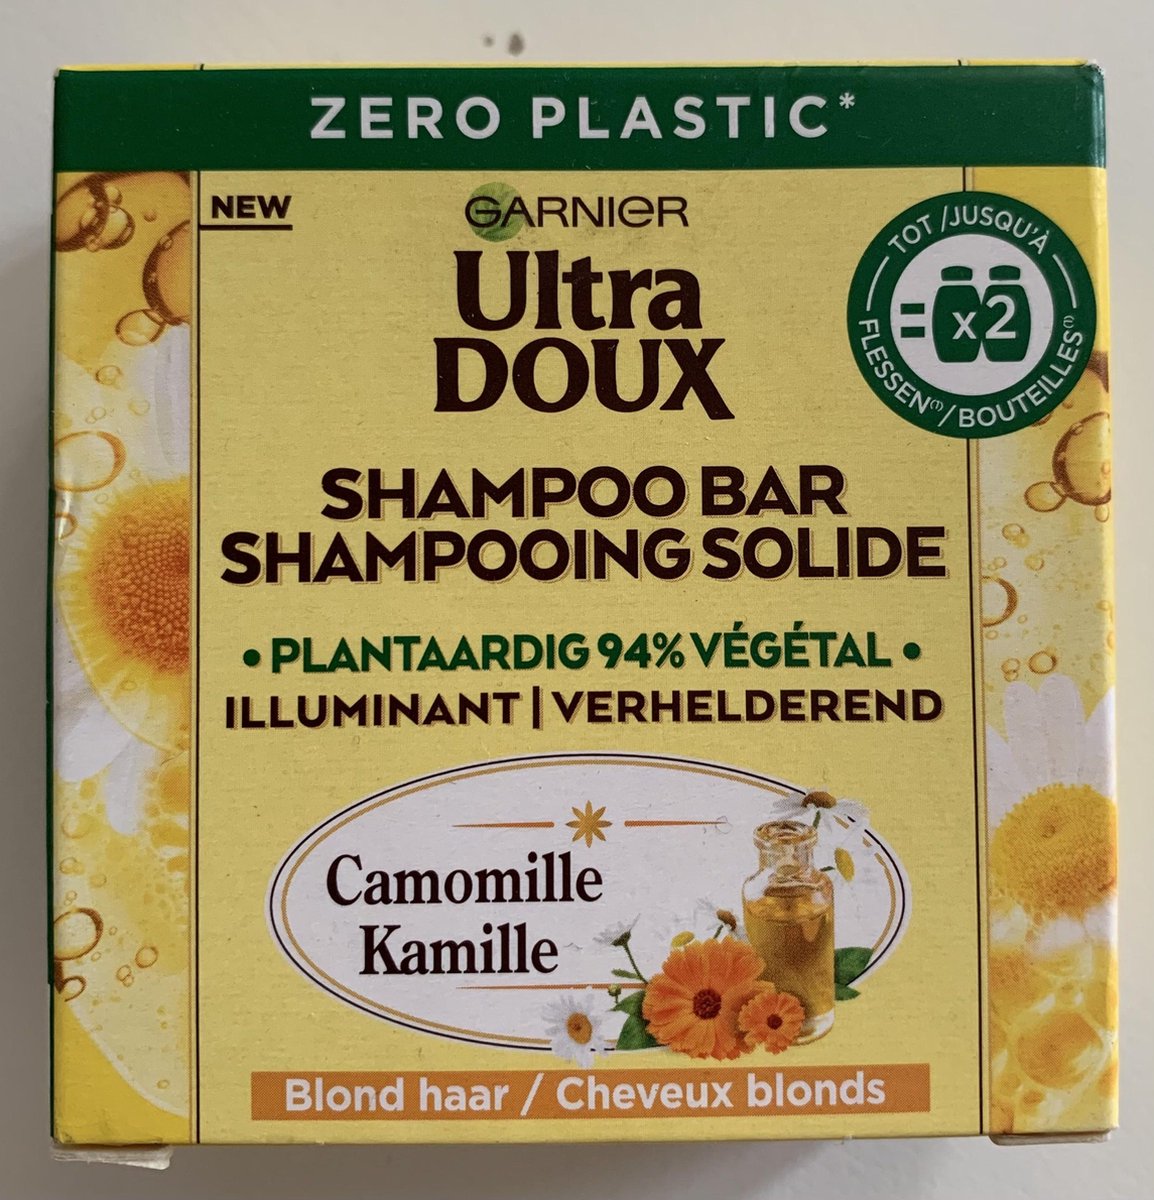 Garnier Ultra Doux Kamille - Shampoo bar Chamomille - Blond haar - verhelderend - 60 gram - Zero plastic